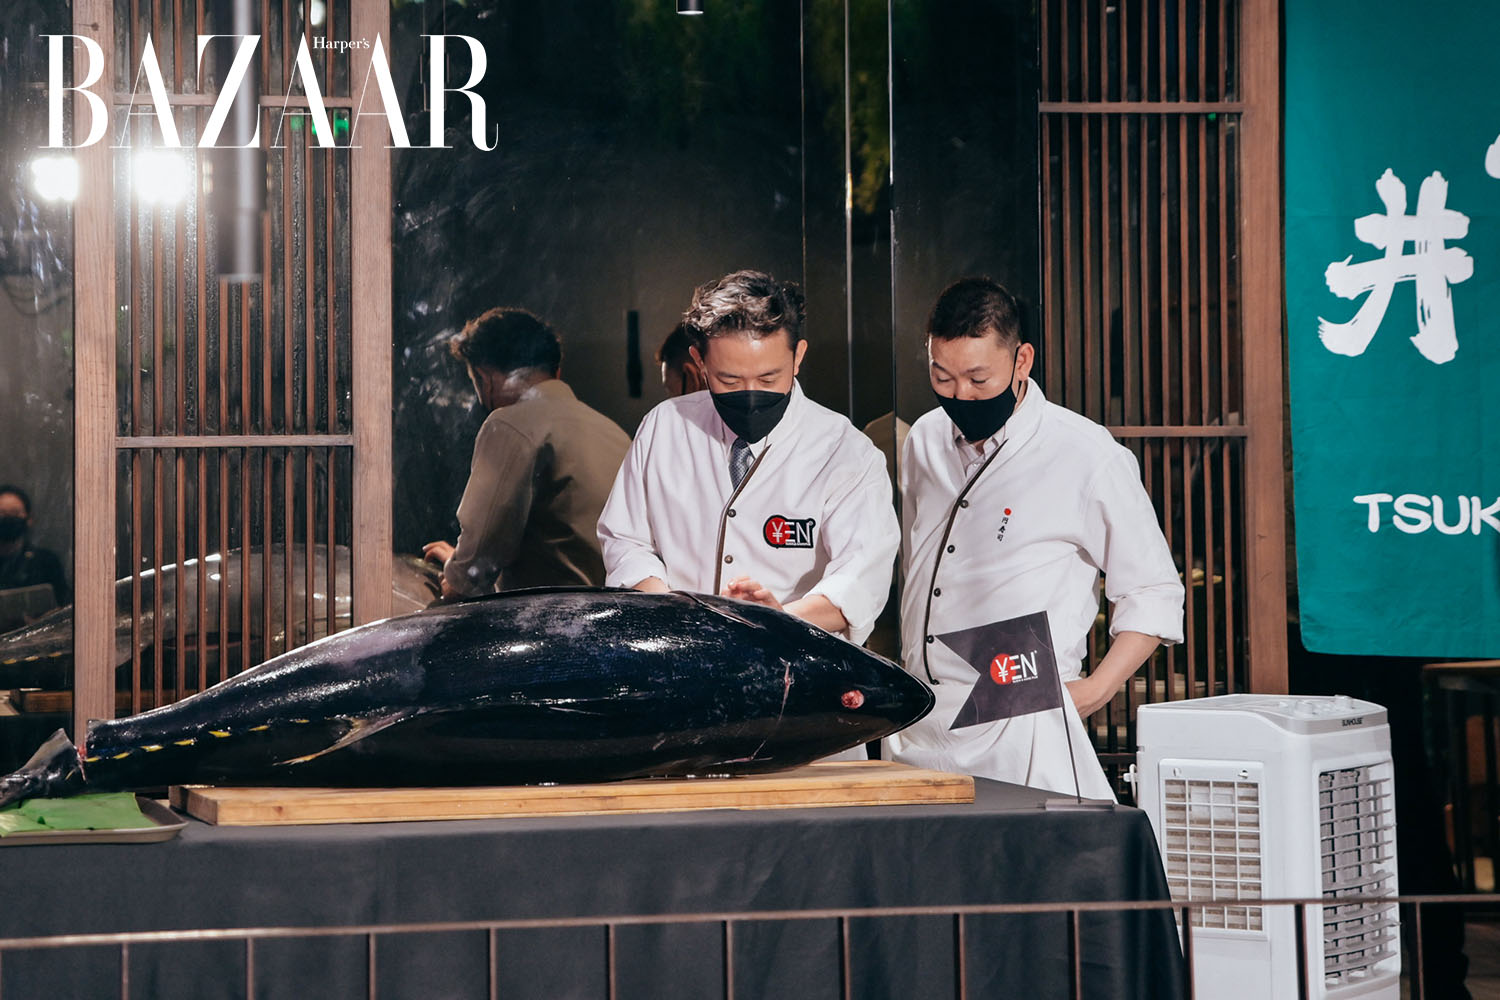 Harpers Bazaar yen sushi sake pub truong son 08 - Yen Sushi & Sake Pub khai trương địa điểm thứ 6 ở Tân Bình